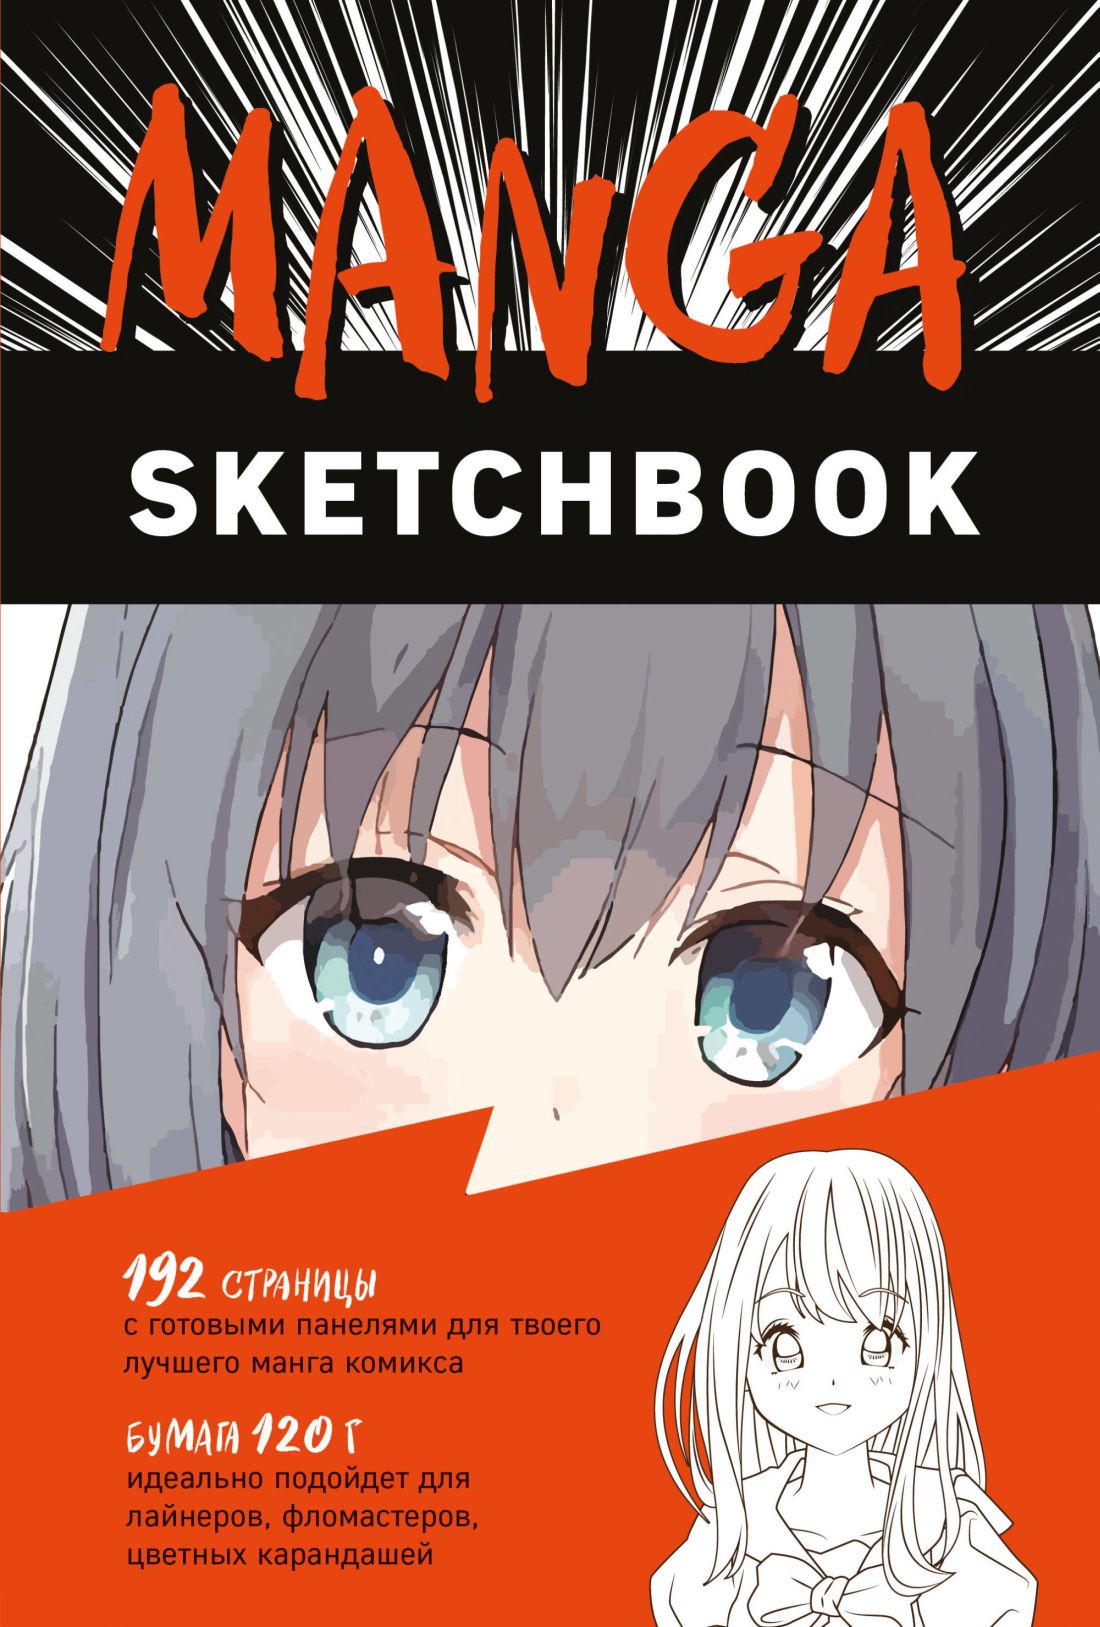 Скетчбук Manga Sketchbook